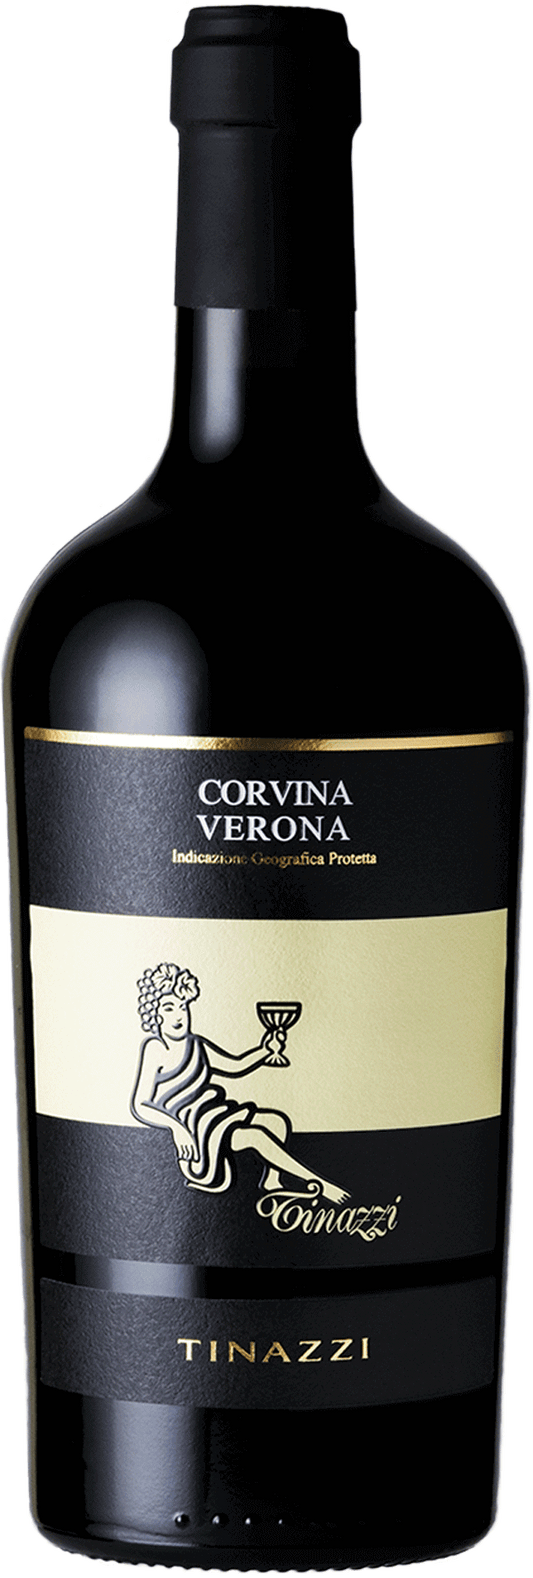 Corvina Verona IGT